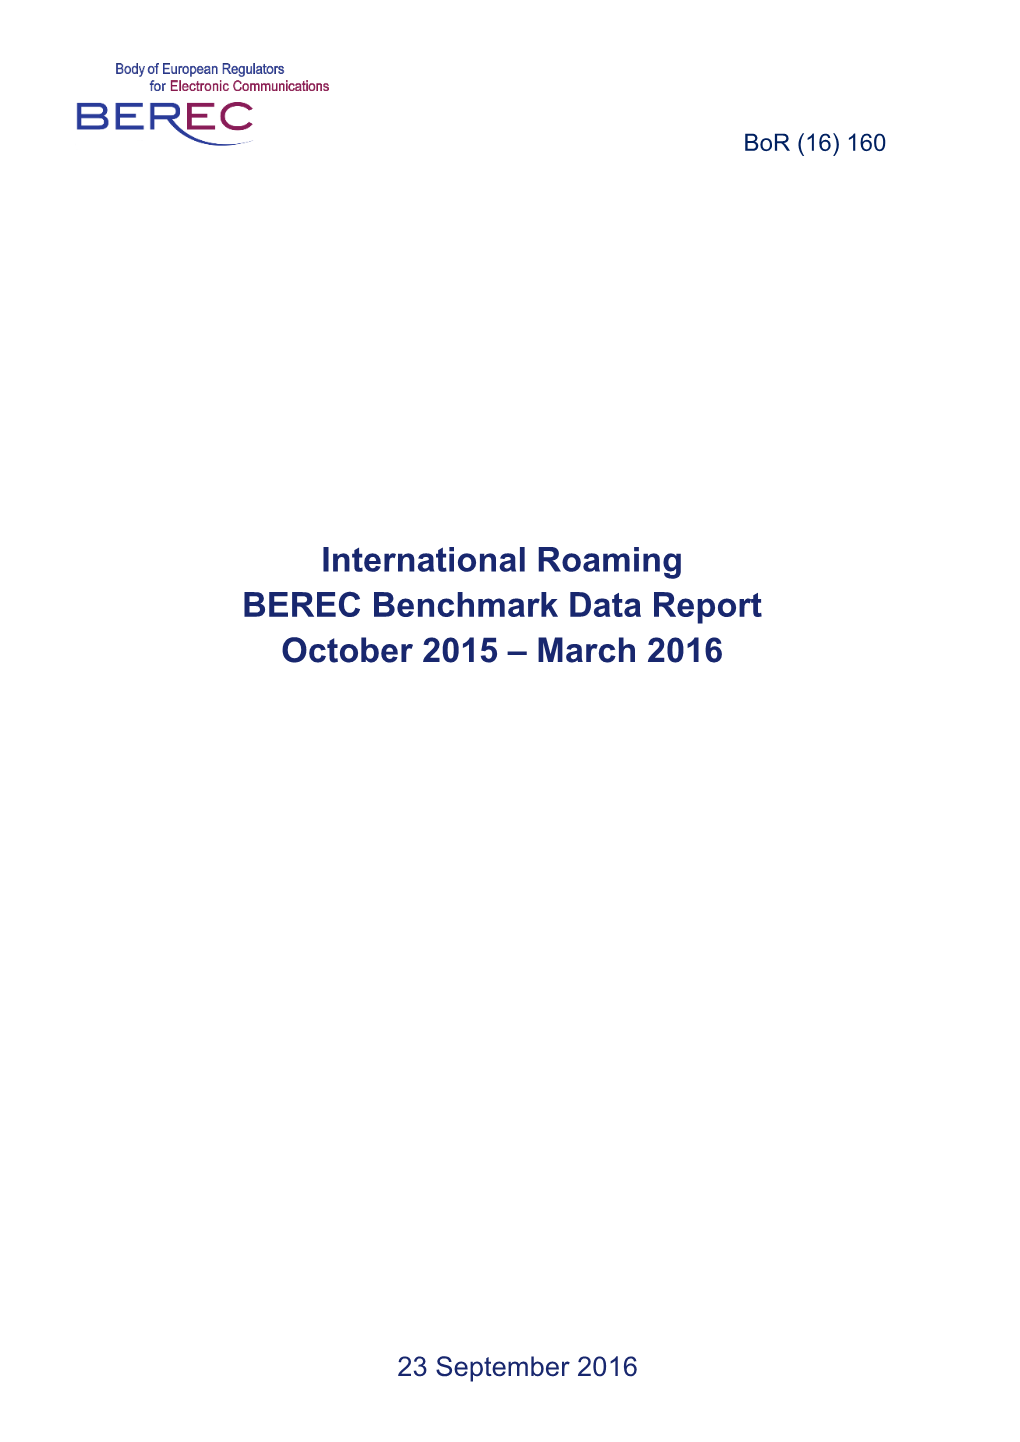 International Roaming BEREC Benchmark Data Report October 2015 – March 2016